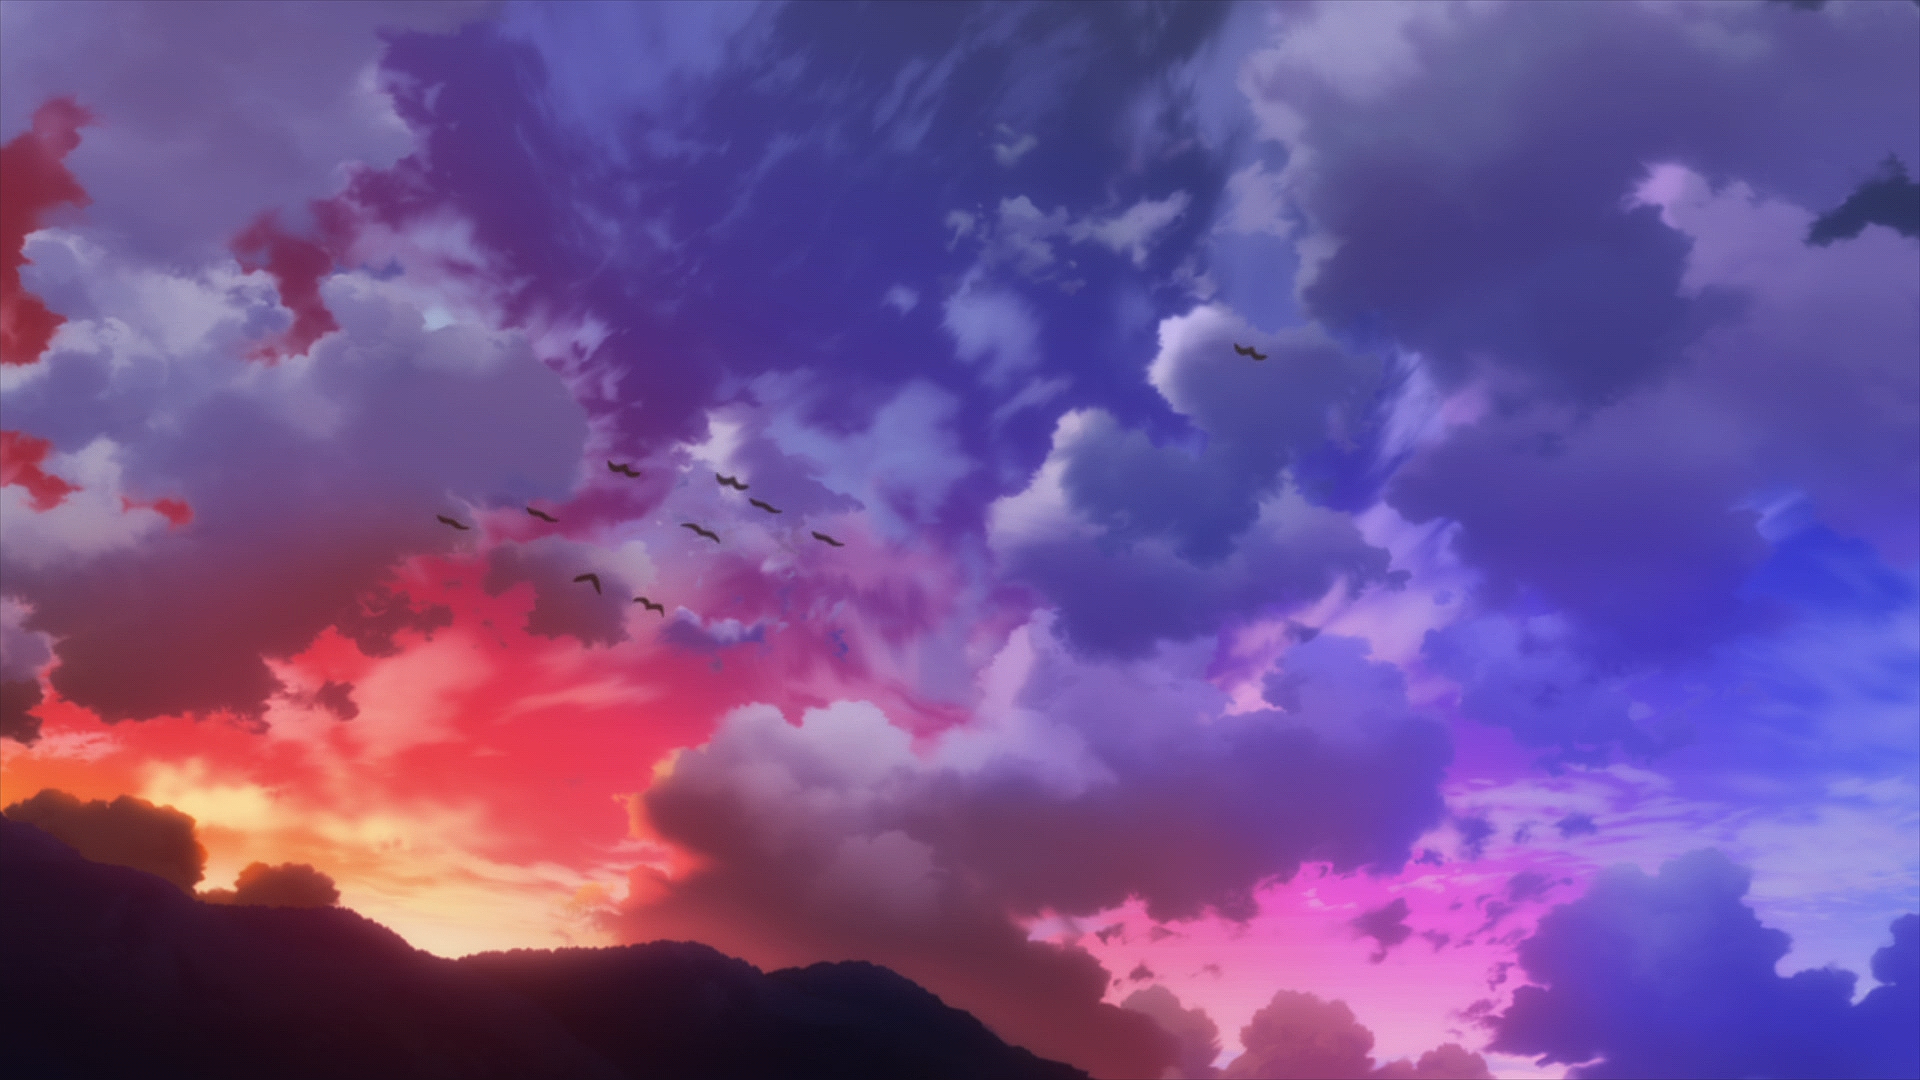 Anime 1920x1080 Re:Zero Kara Hajimeru Isekai Seikatsu screen shot anime anime screenshot sky clouds birds animals